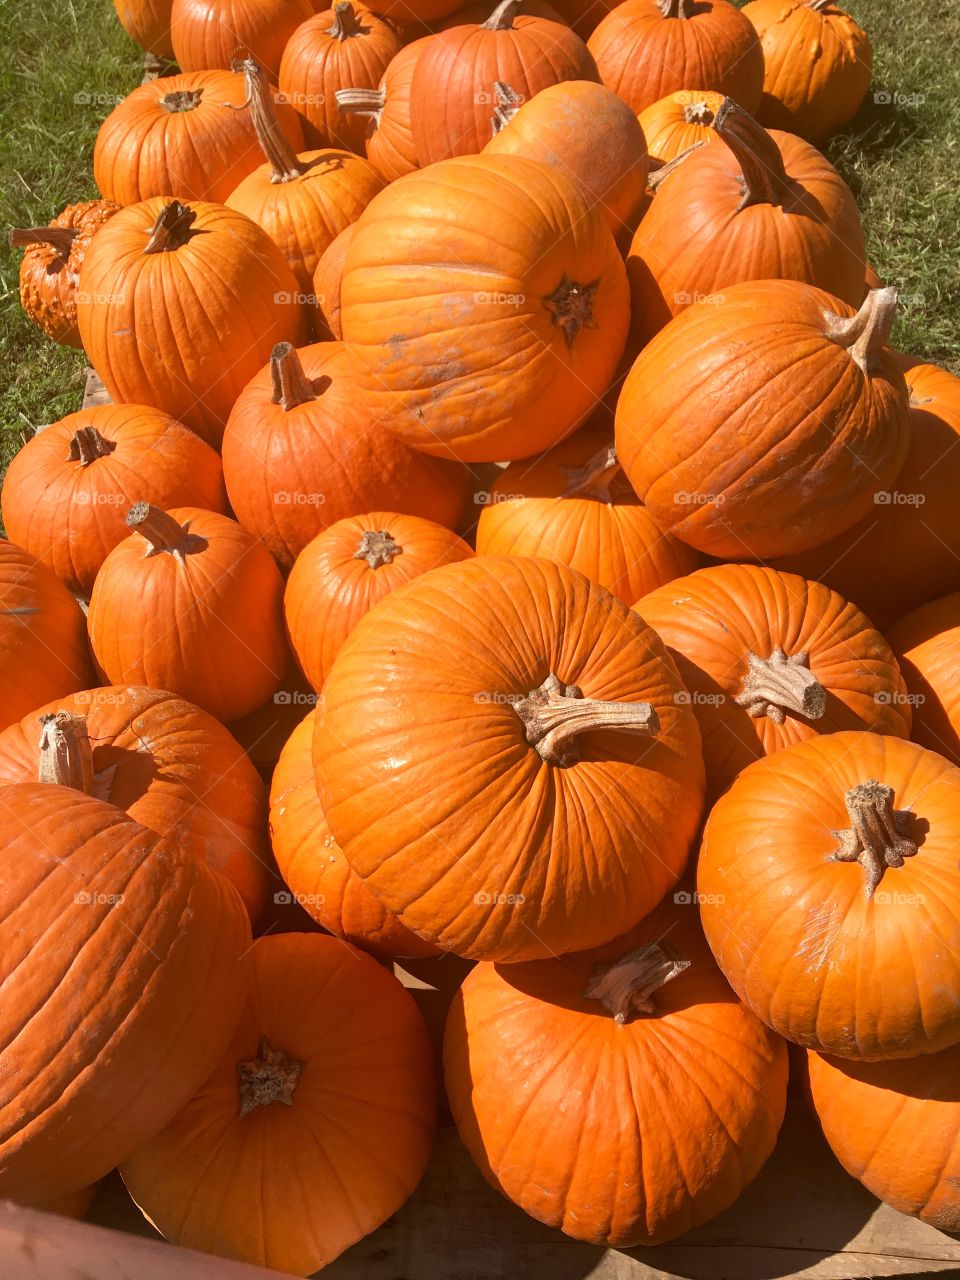 It’s pumpkin season. 🤗